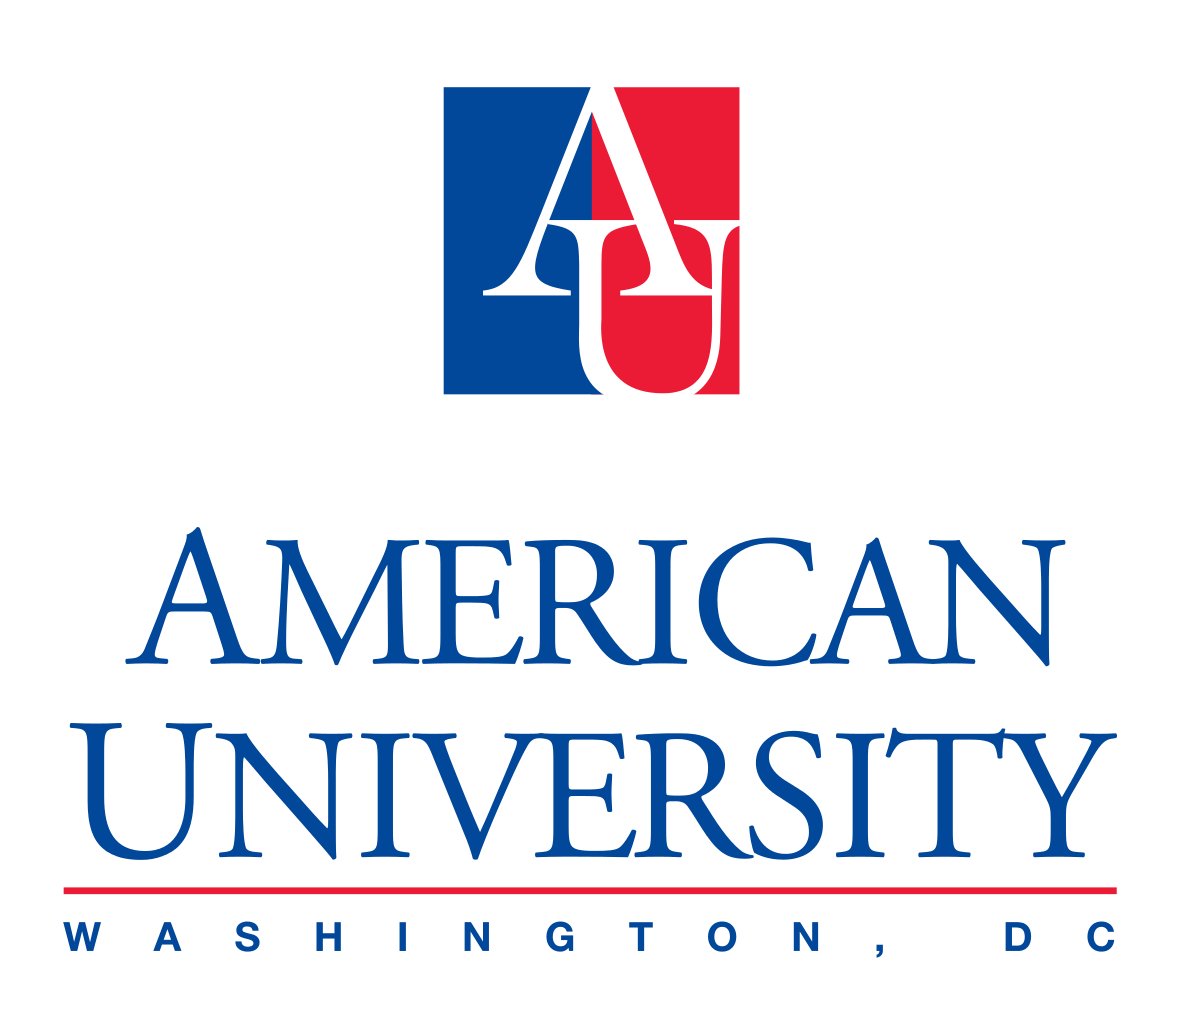 Bourse d’études des nouveaux leaders mondiaux de l’Université américaine (AU EGLS)  pour les étudiants internationaux de premier cycle 2019/2020